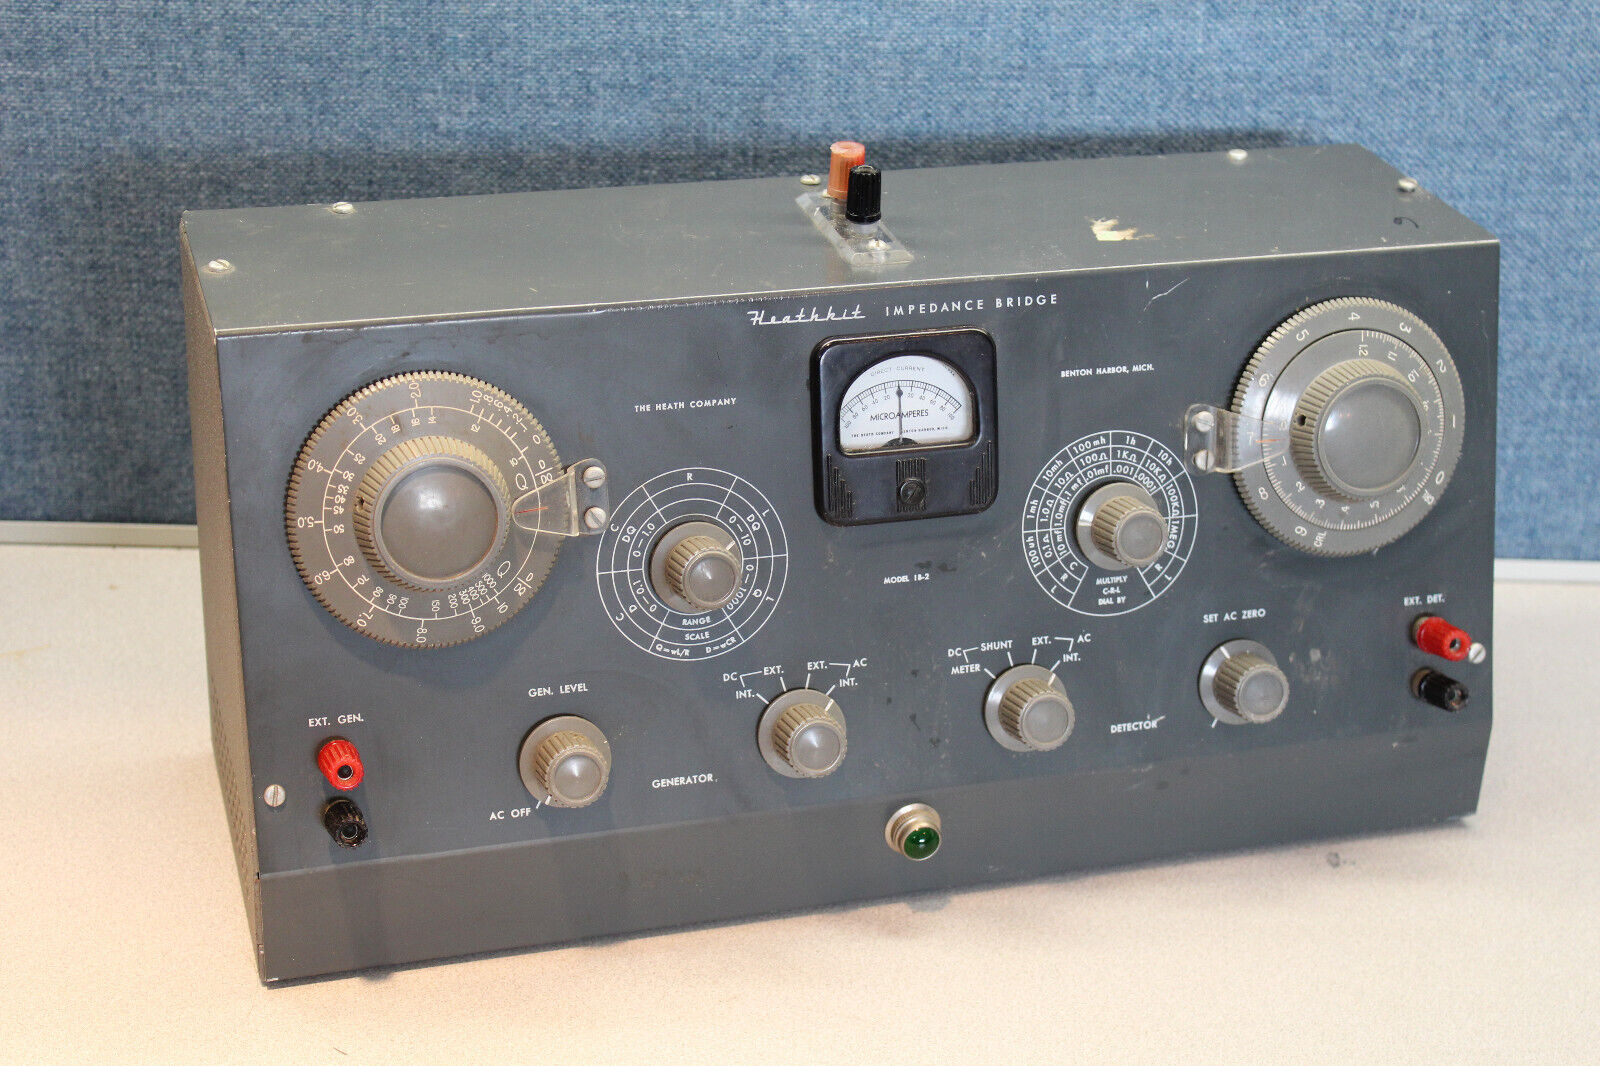 Heathkit IB-2 Impedance Bridge - Vintage